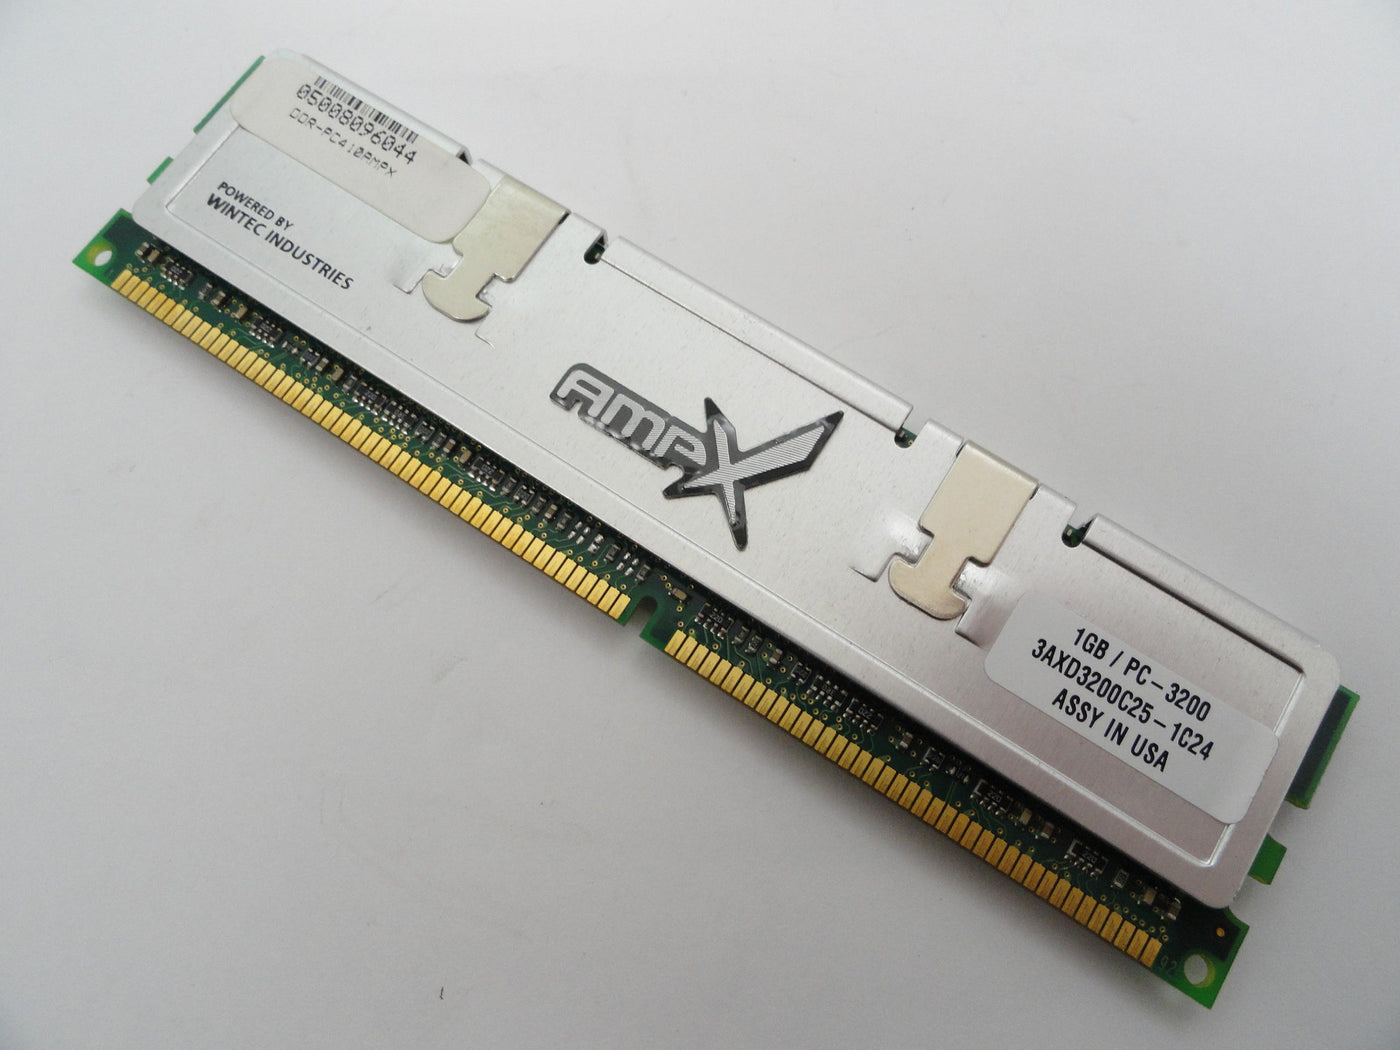 PR18234_3DDR-PC410AMPX_Wintec AmpX 1Gb DDR-400 PC3200 CL3 RAM - Image2